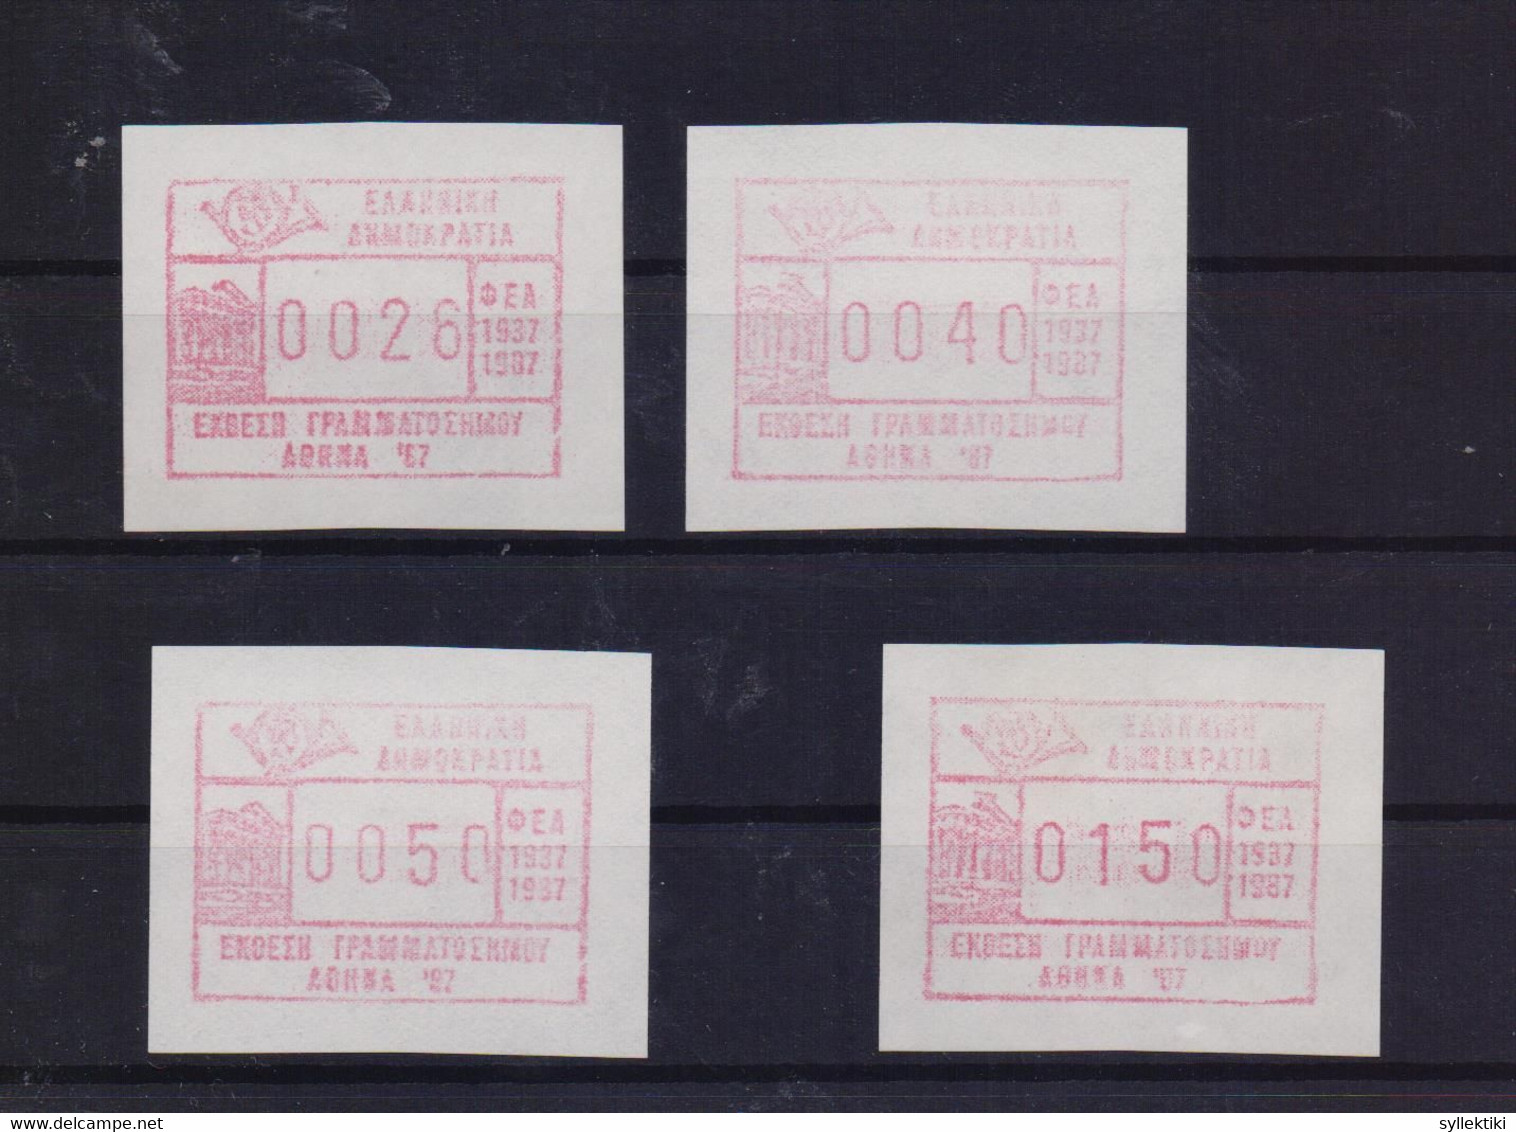 GREECE 1987 ATM FRAMA ΕΧΗΙΒΙΤΙΟΝ ΑΘΗΝΑ '87 TYPE ΙI COMPLETE SET OF 4 MNH STAMPS - Vignette [ATM]